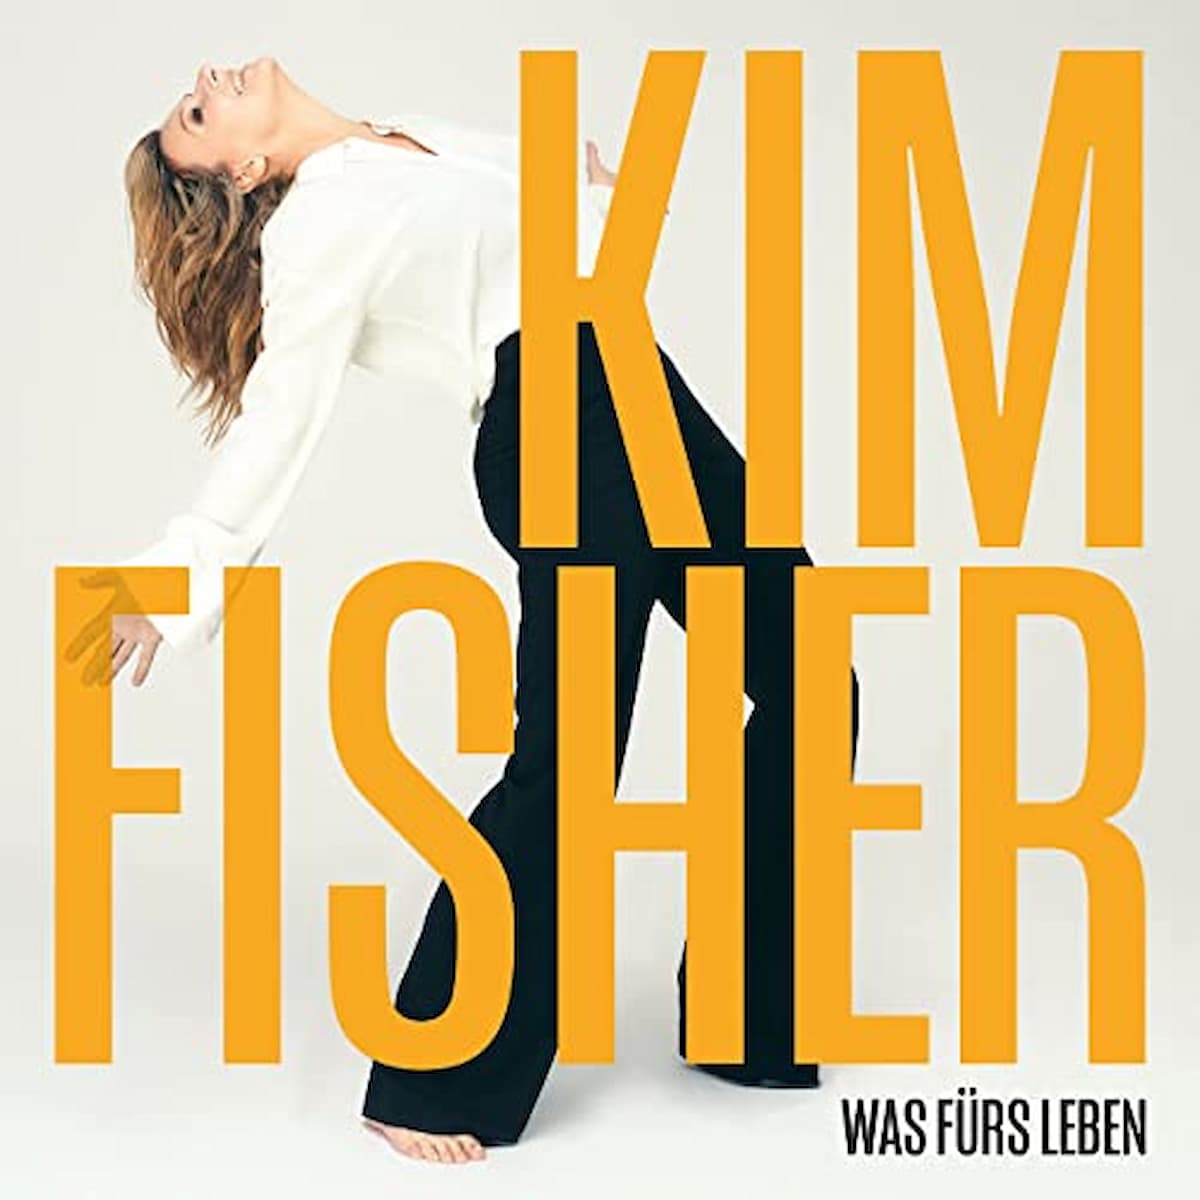 Kim Fisher CD “Was fürs Leben” 2022